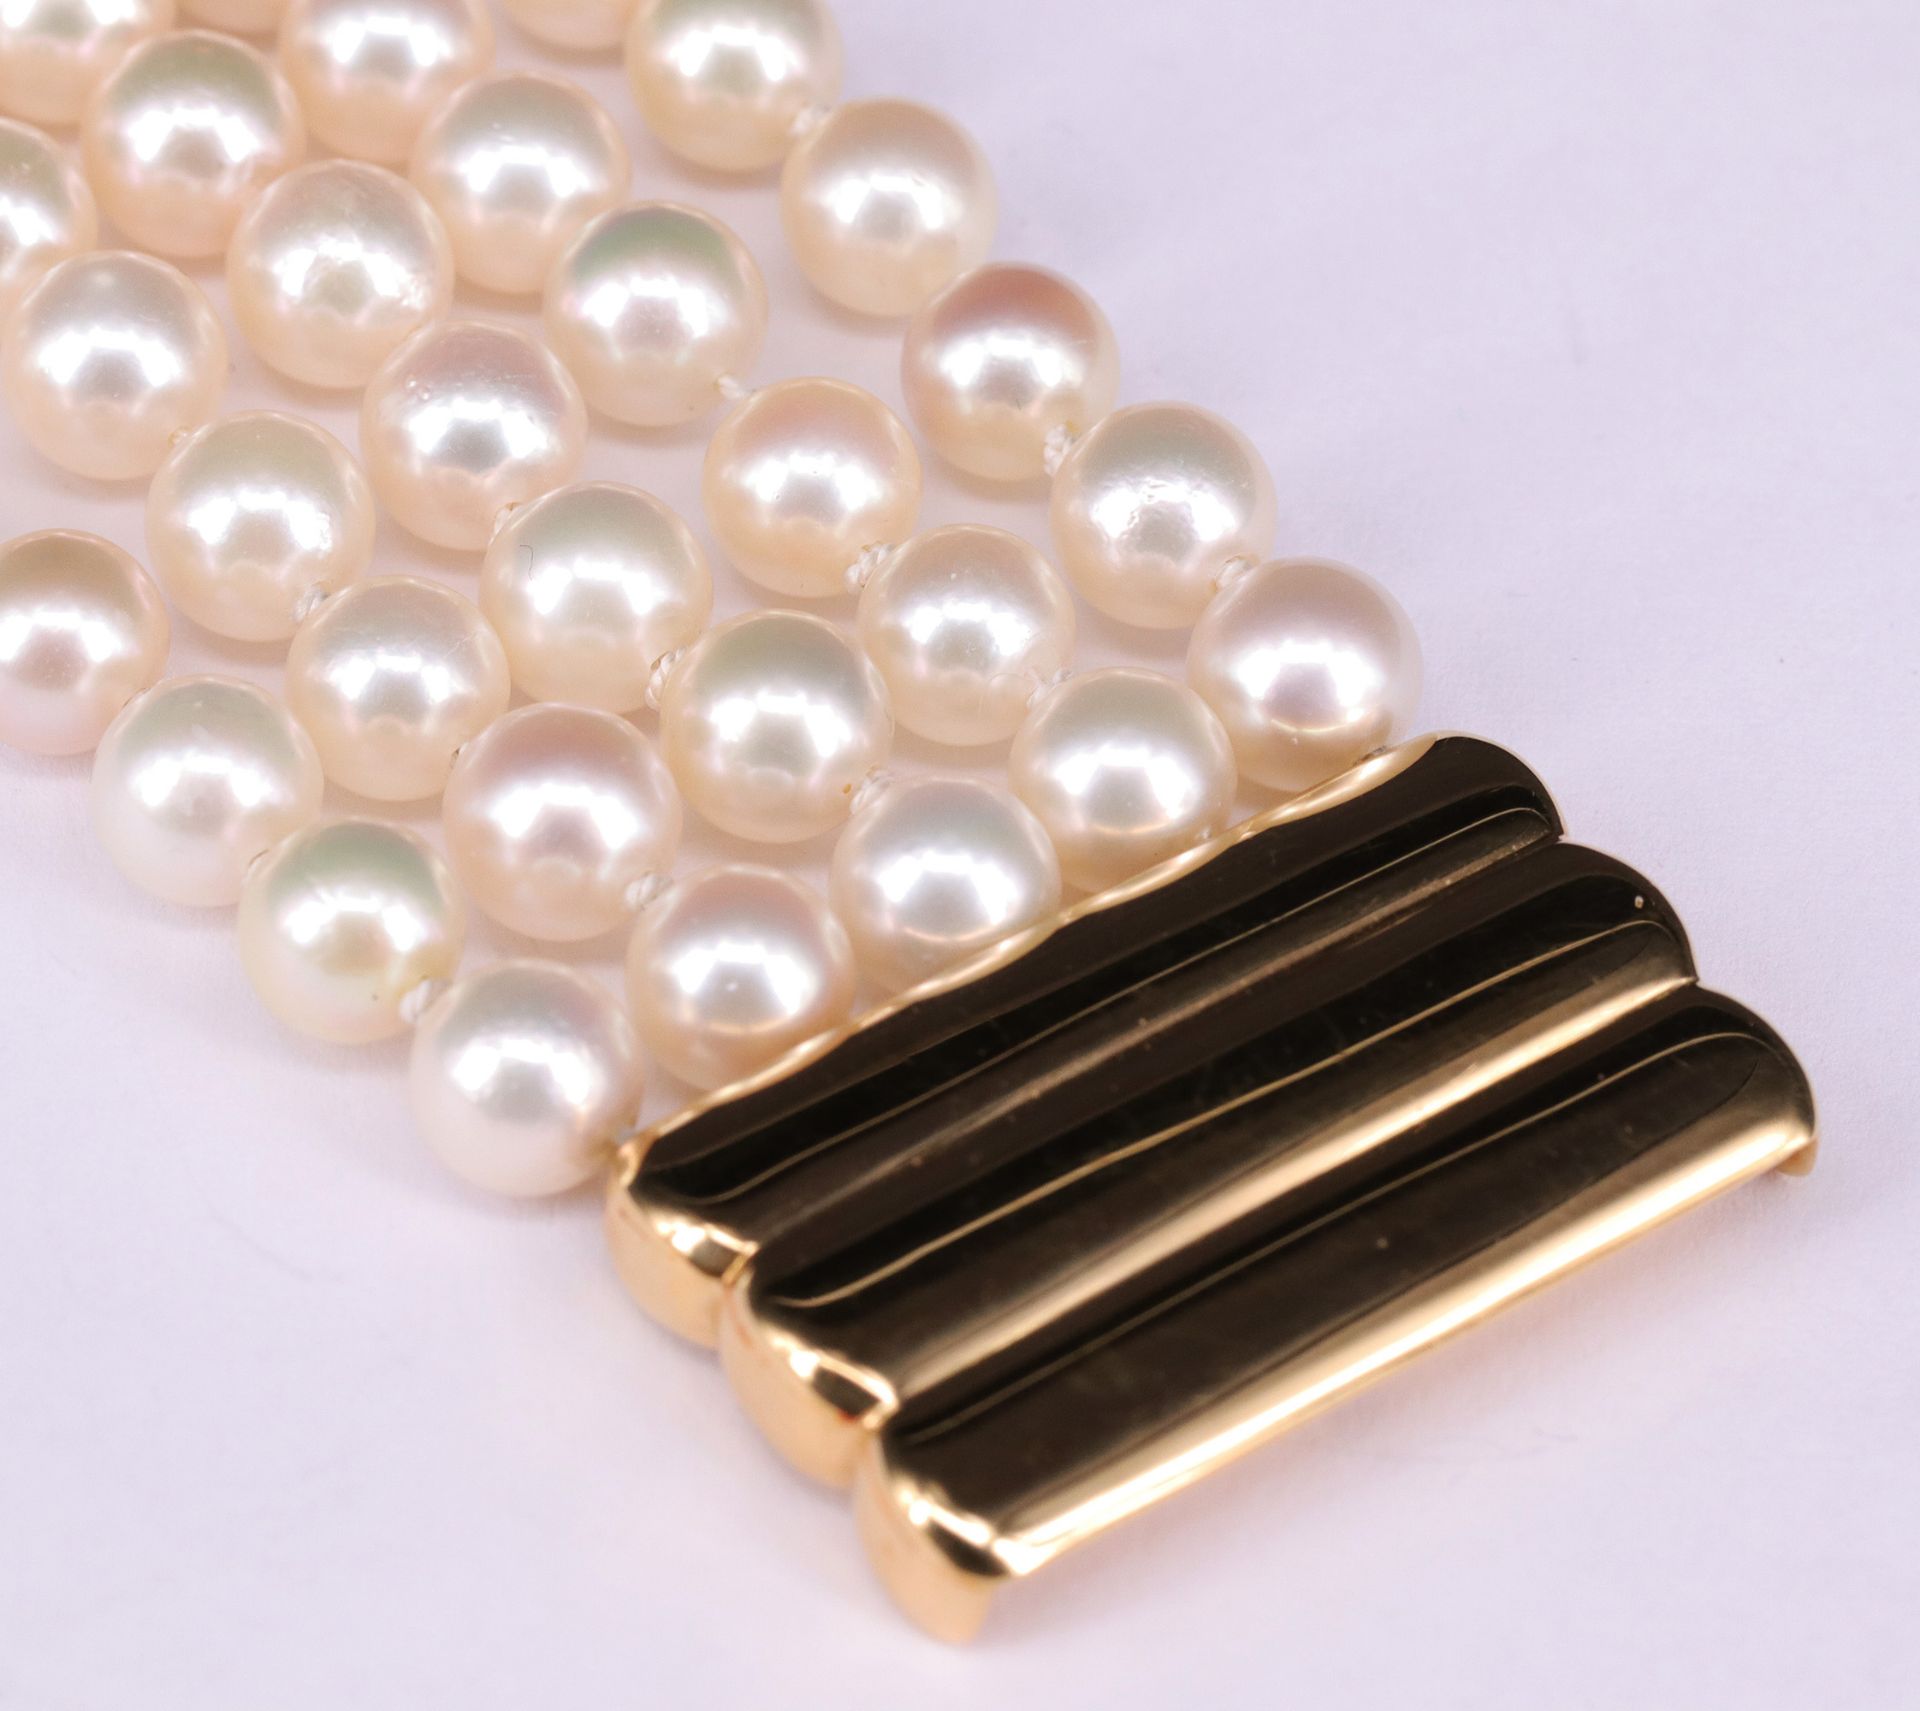 Fünf-reihiges Perlarmband / five row pearl bracelet. 750er GG, D. der Perlen 7 mm. Kastenschloss 3,5 - Bild 4 aus 5